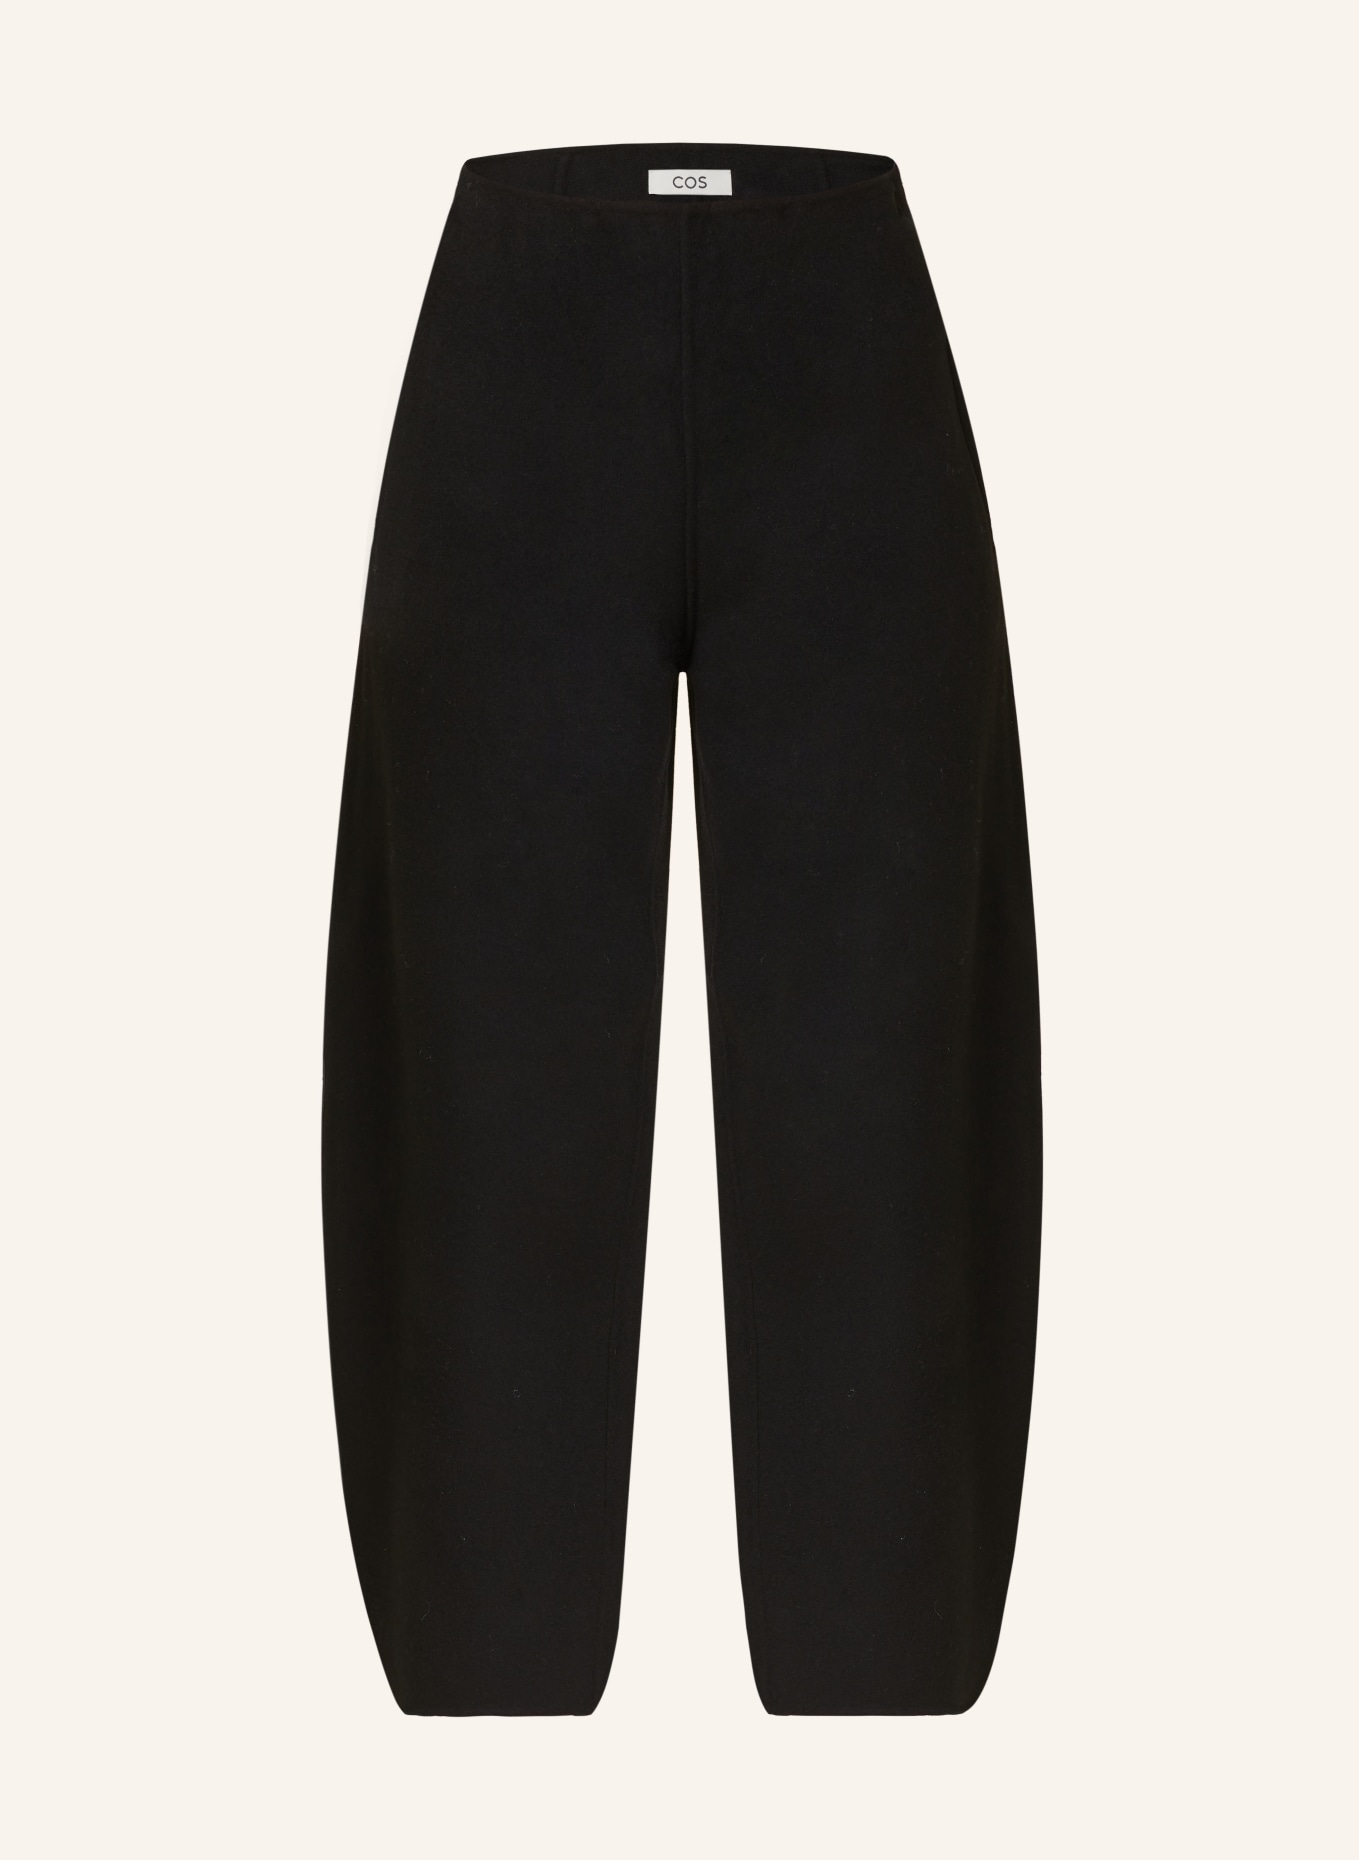 COS 7/8 pants, Color: BLACK (Image 1)